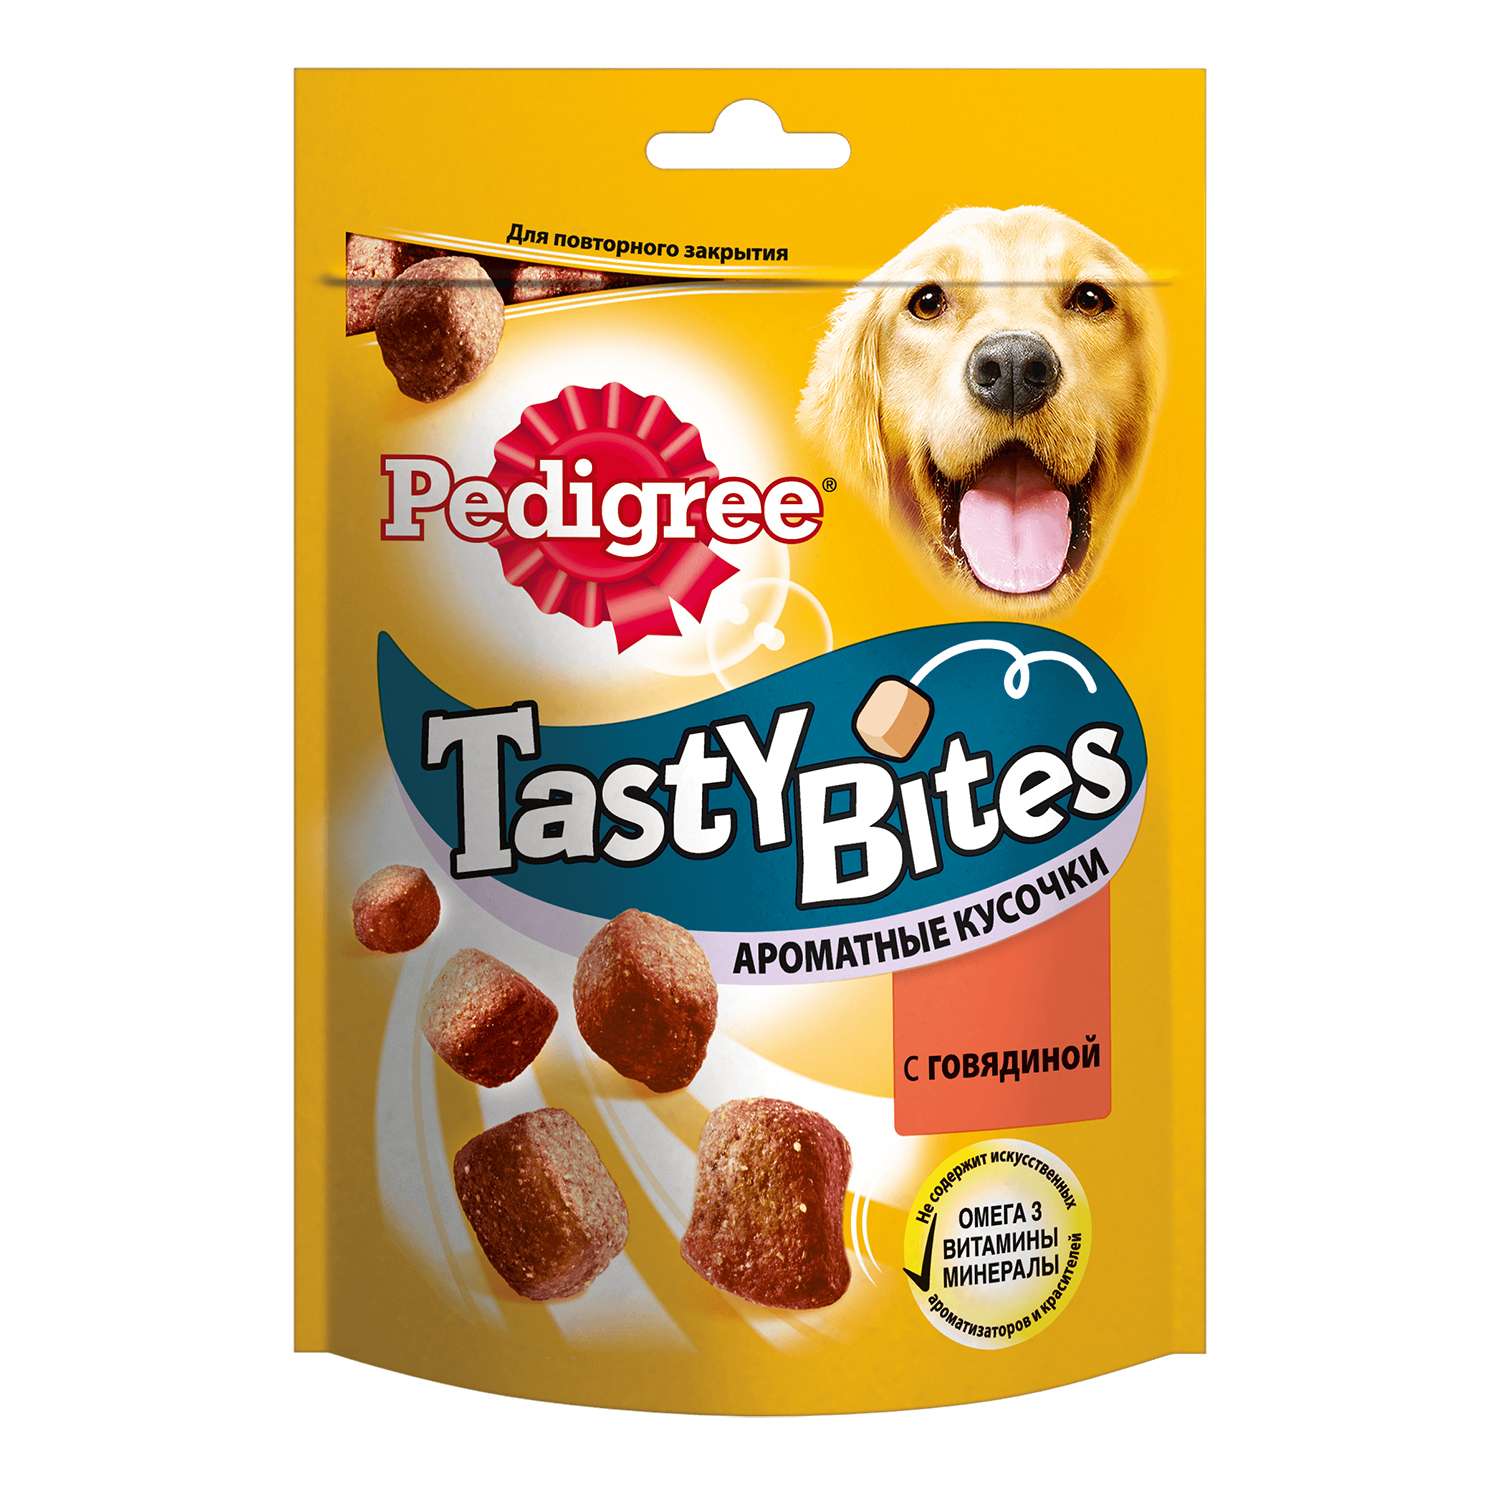 Лакомство для собак Pedigree Tasty Bites ароматные кусочки с говядиной 130г - фото 1